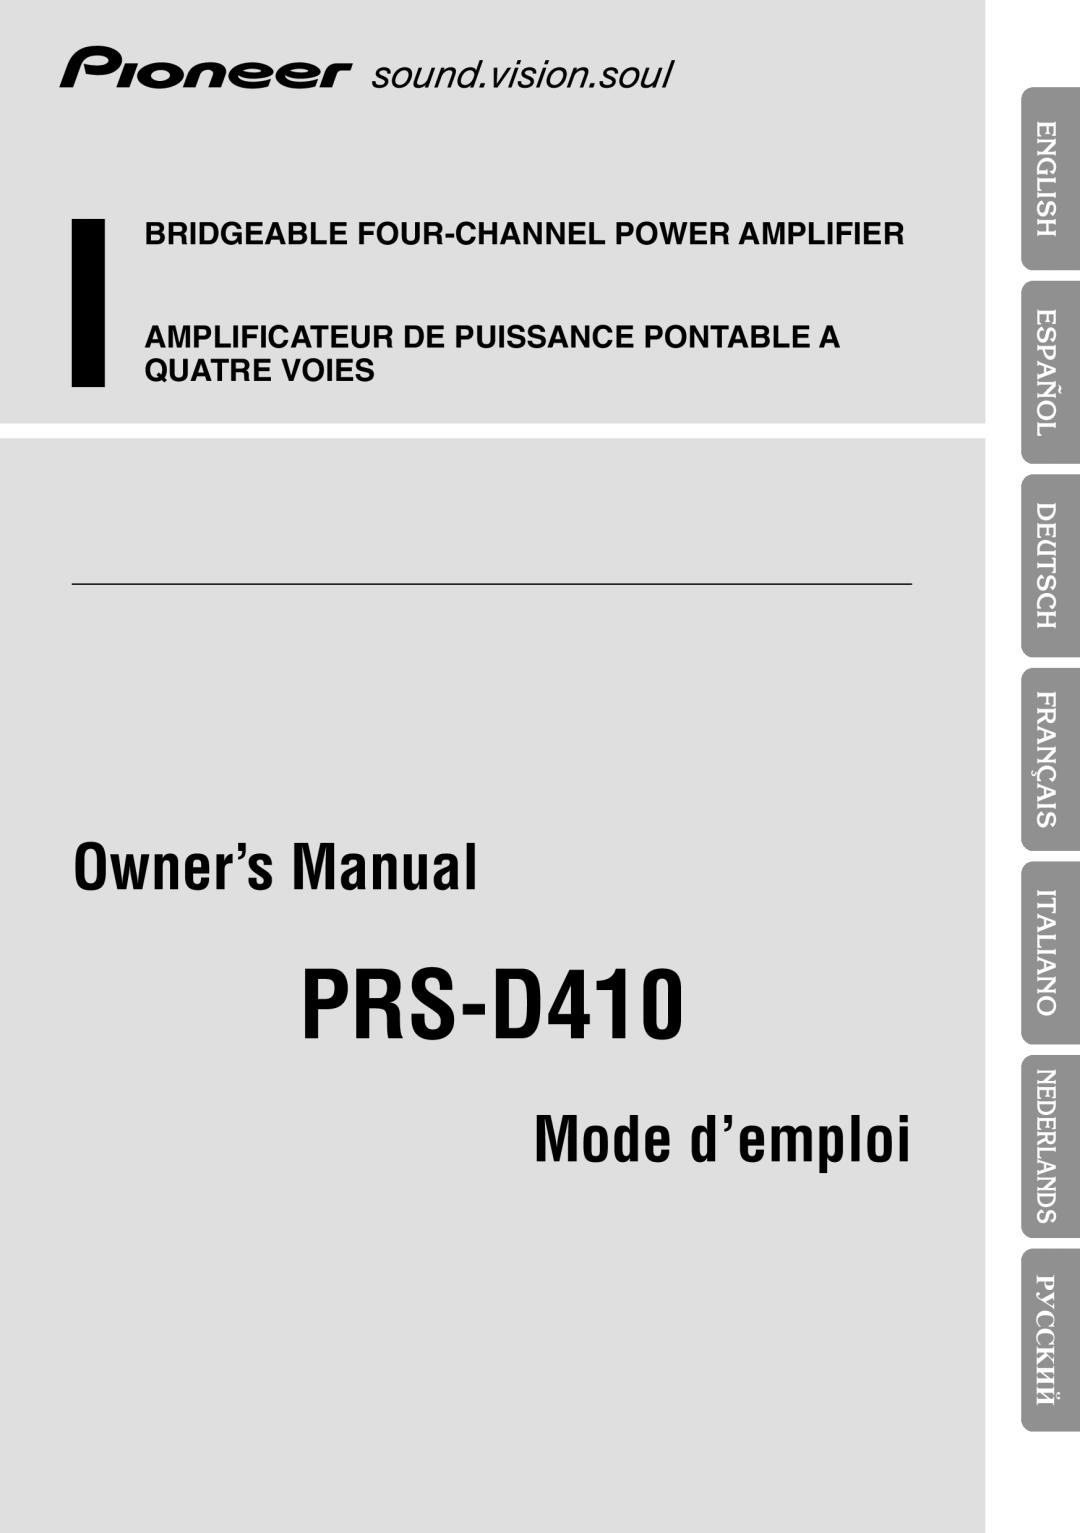 Pioneer PRS-D410 owner manual êìëëäàâ, Owner’s Manual, Mode d’emploi, Bridgeable Four-Channelpower Amplifier 